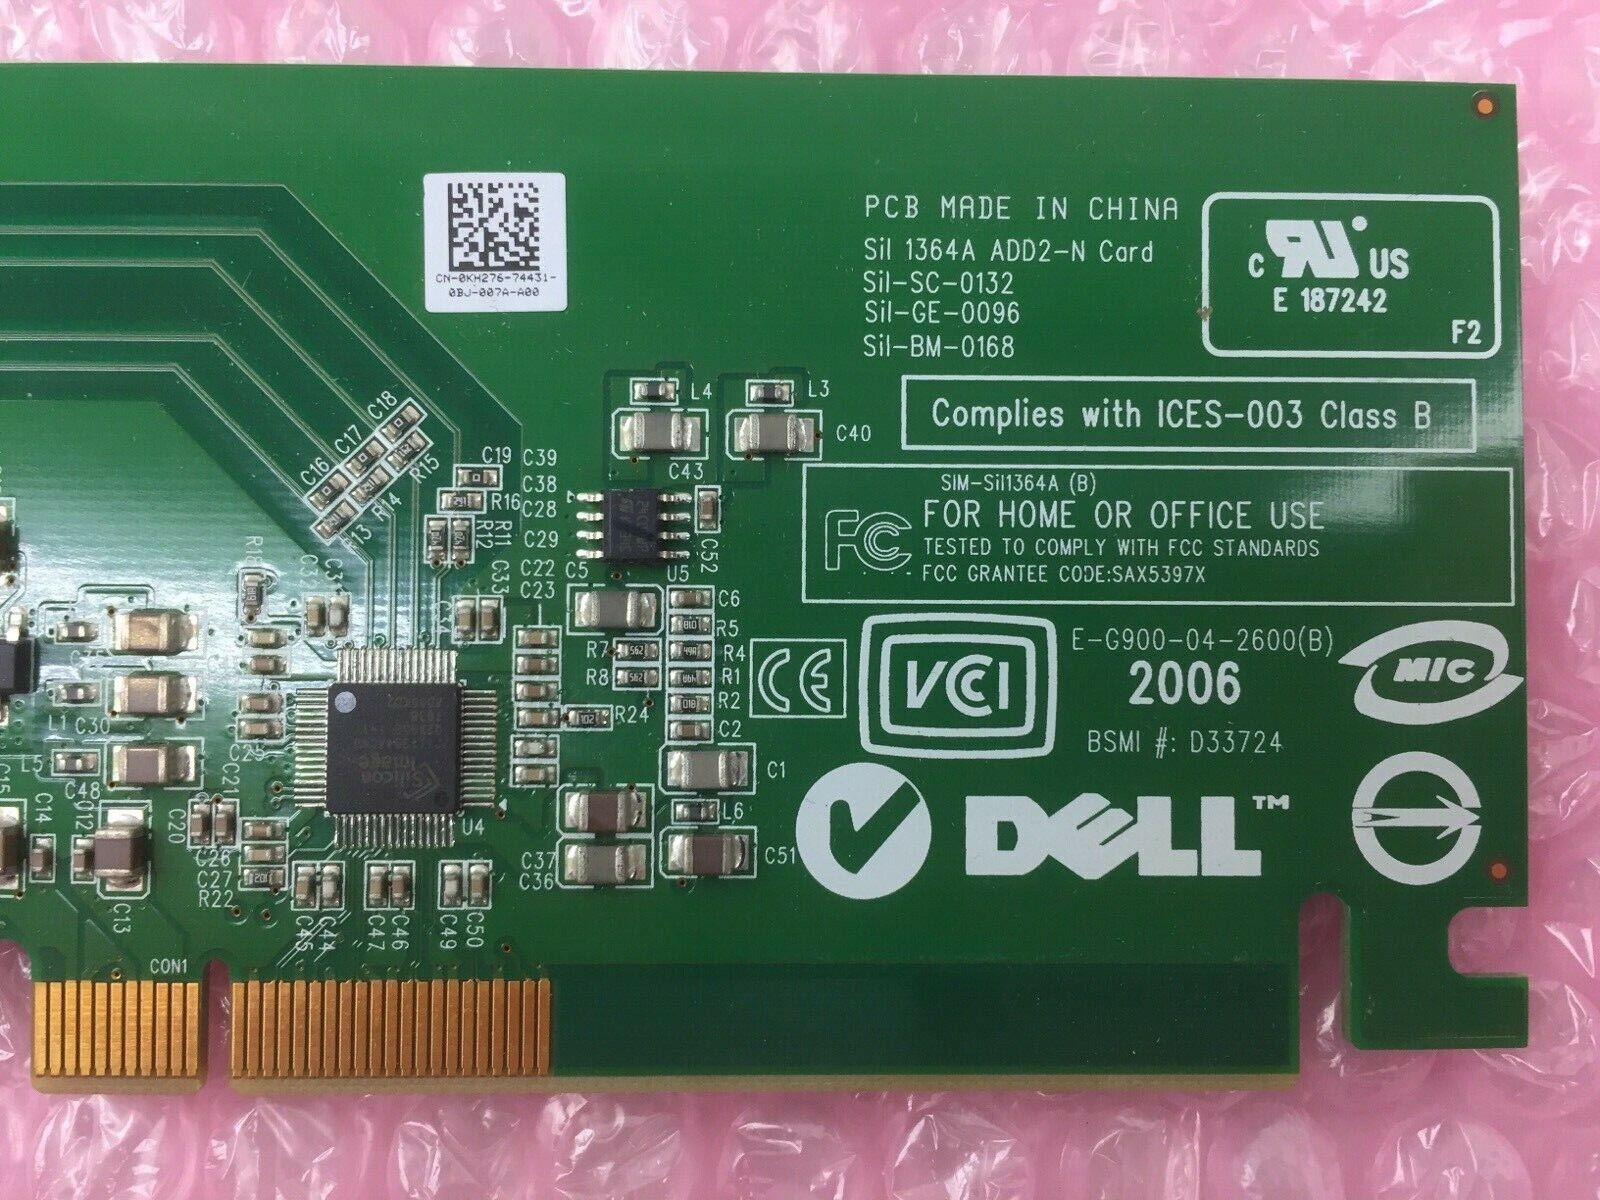 OEM Dell E-G900-04-2600(B) DVI-D Graphic Video Card